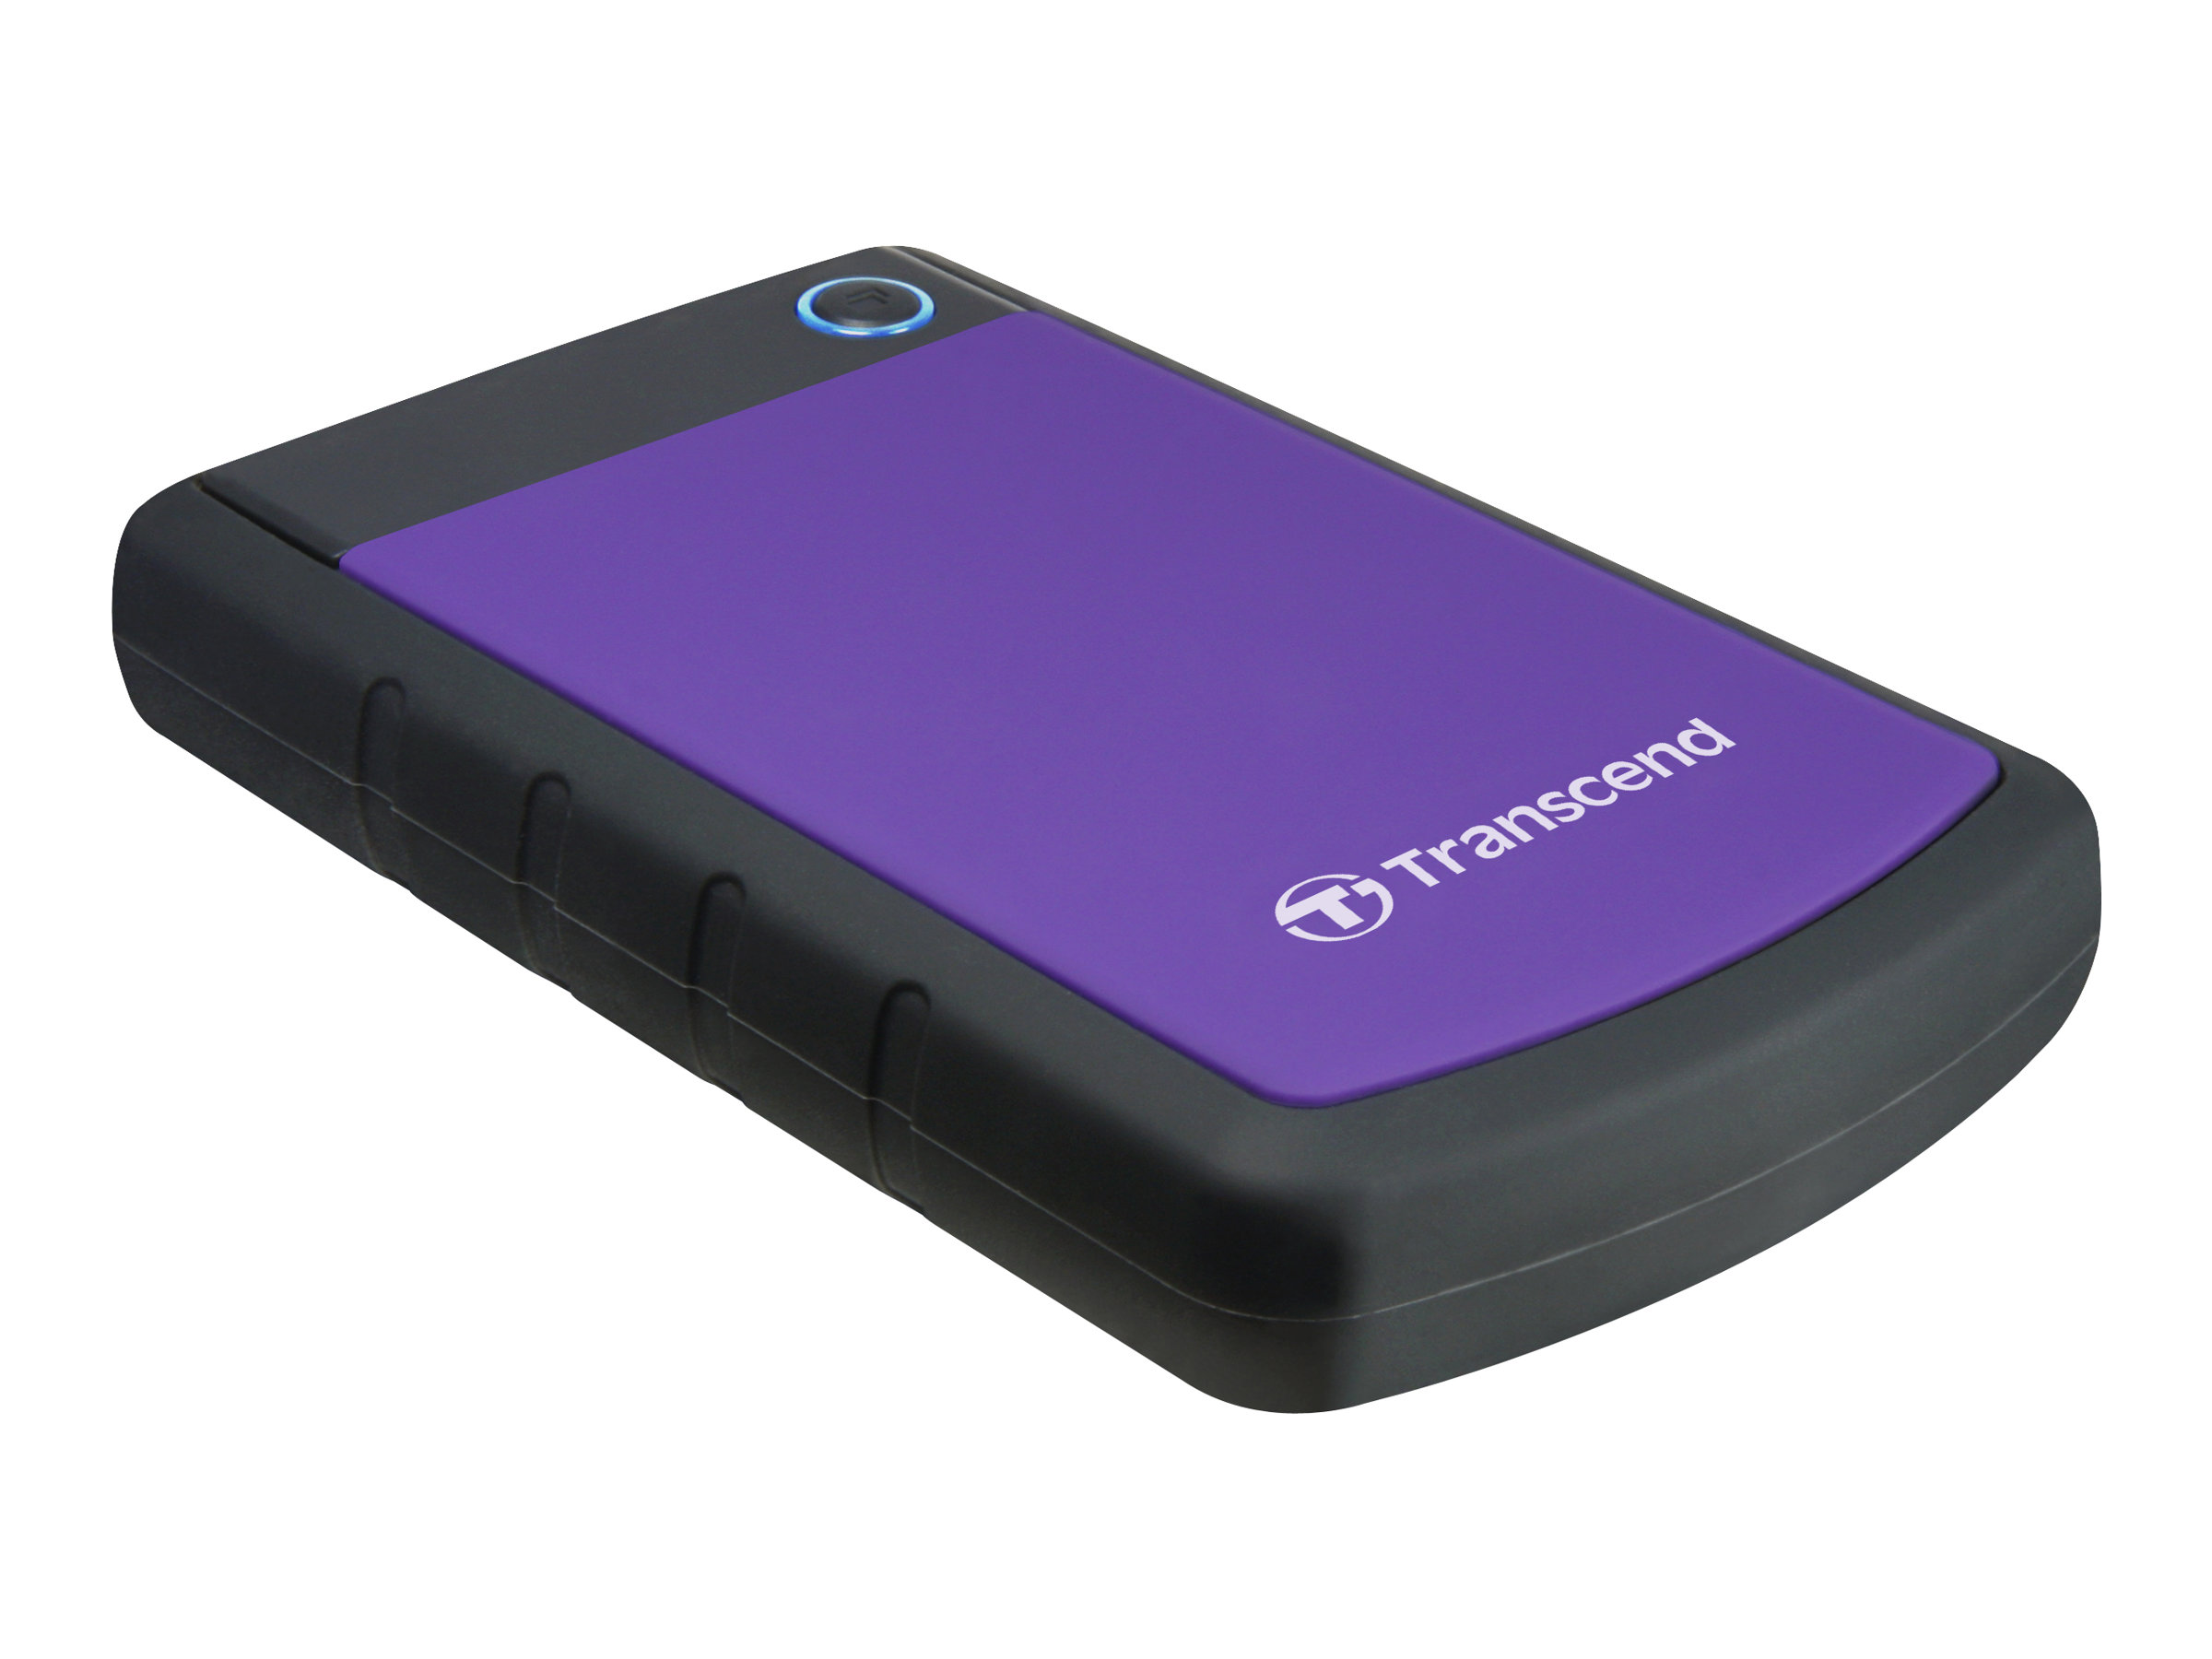 Transcend StoreJet 25H3P - Festplatte - 2 TB - extern (tragbar)